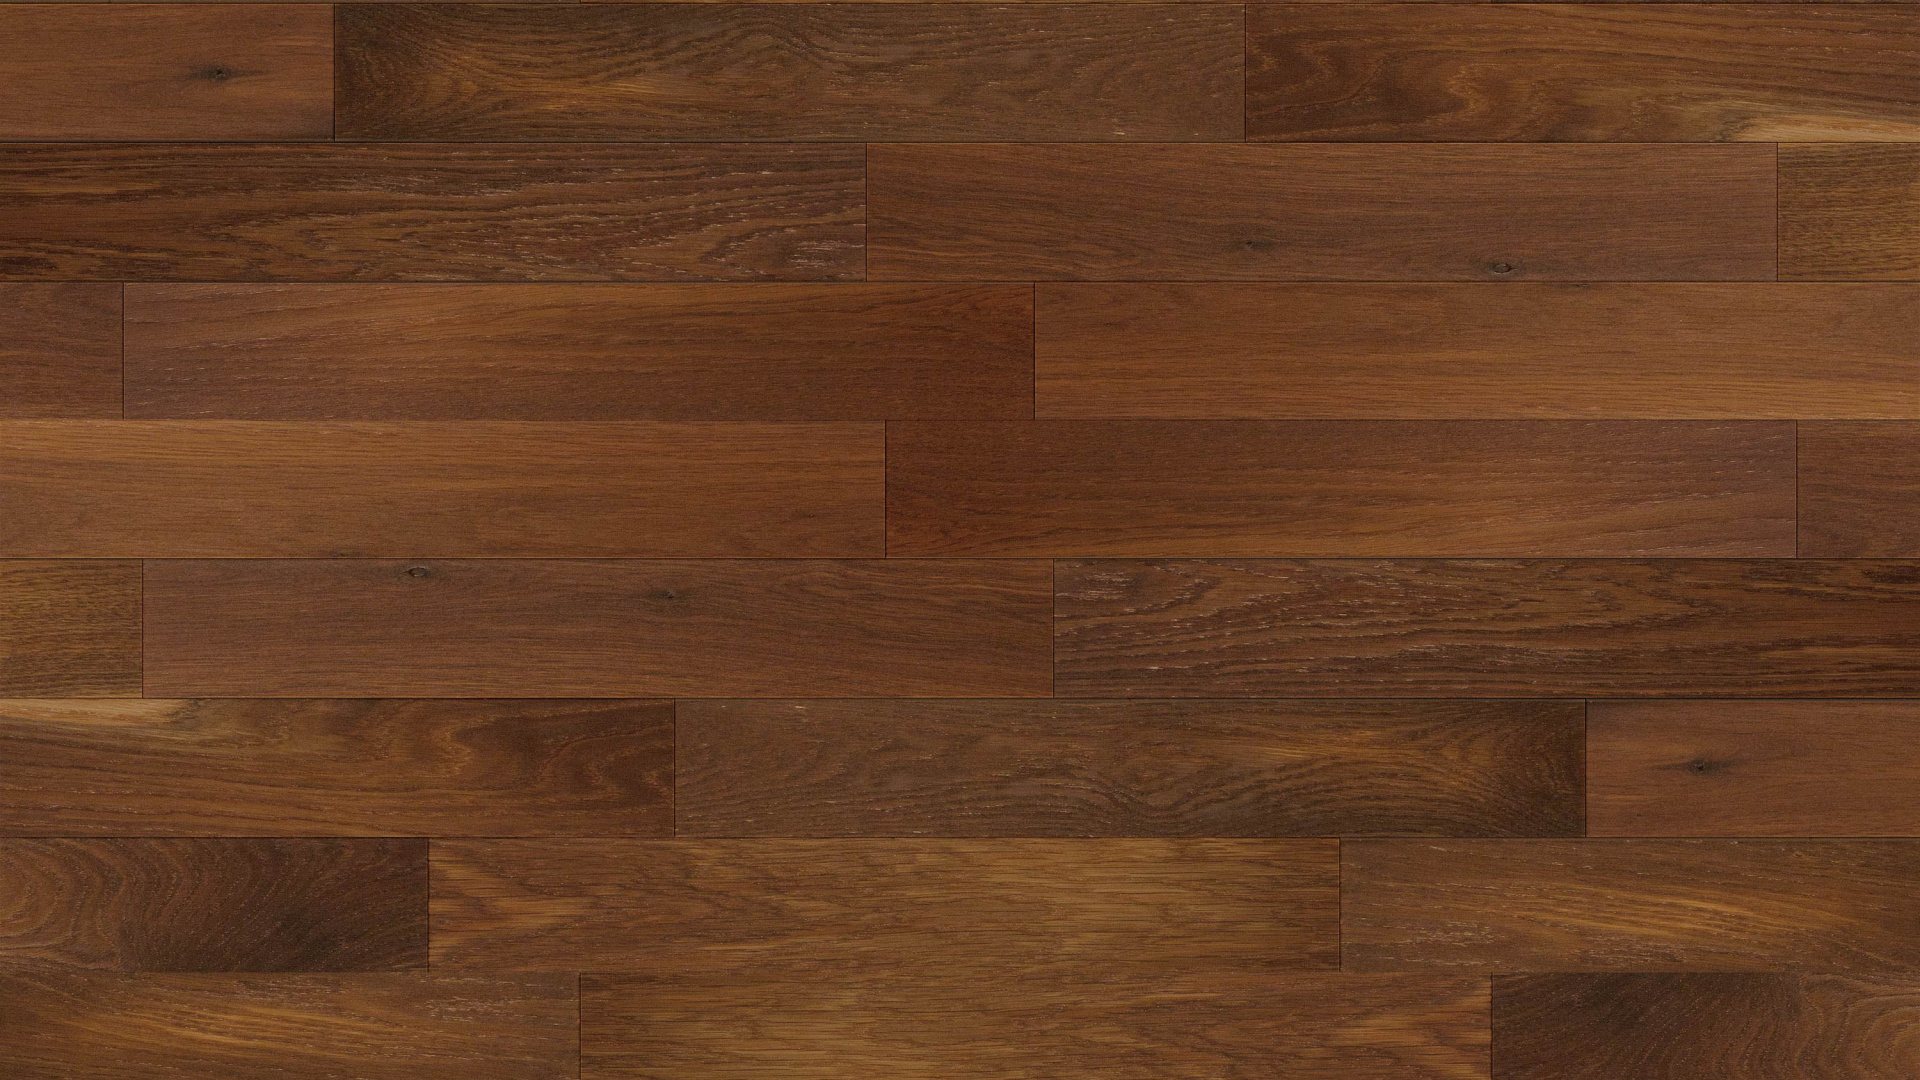 Brown Wooden Parquet Floor Tiles. Wallpaper in 1920x1080 Resolution